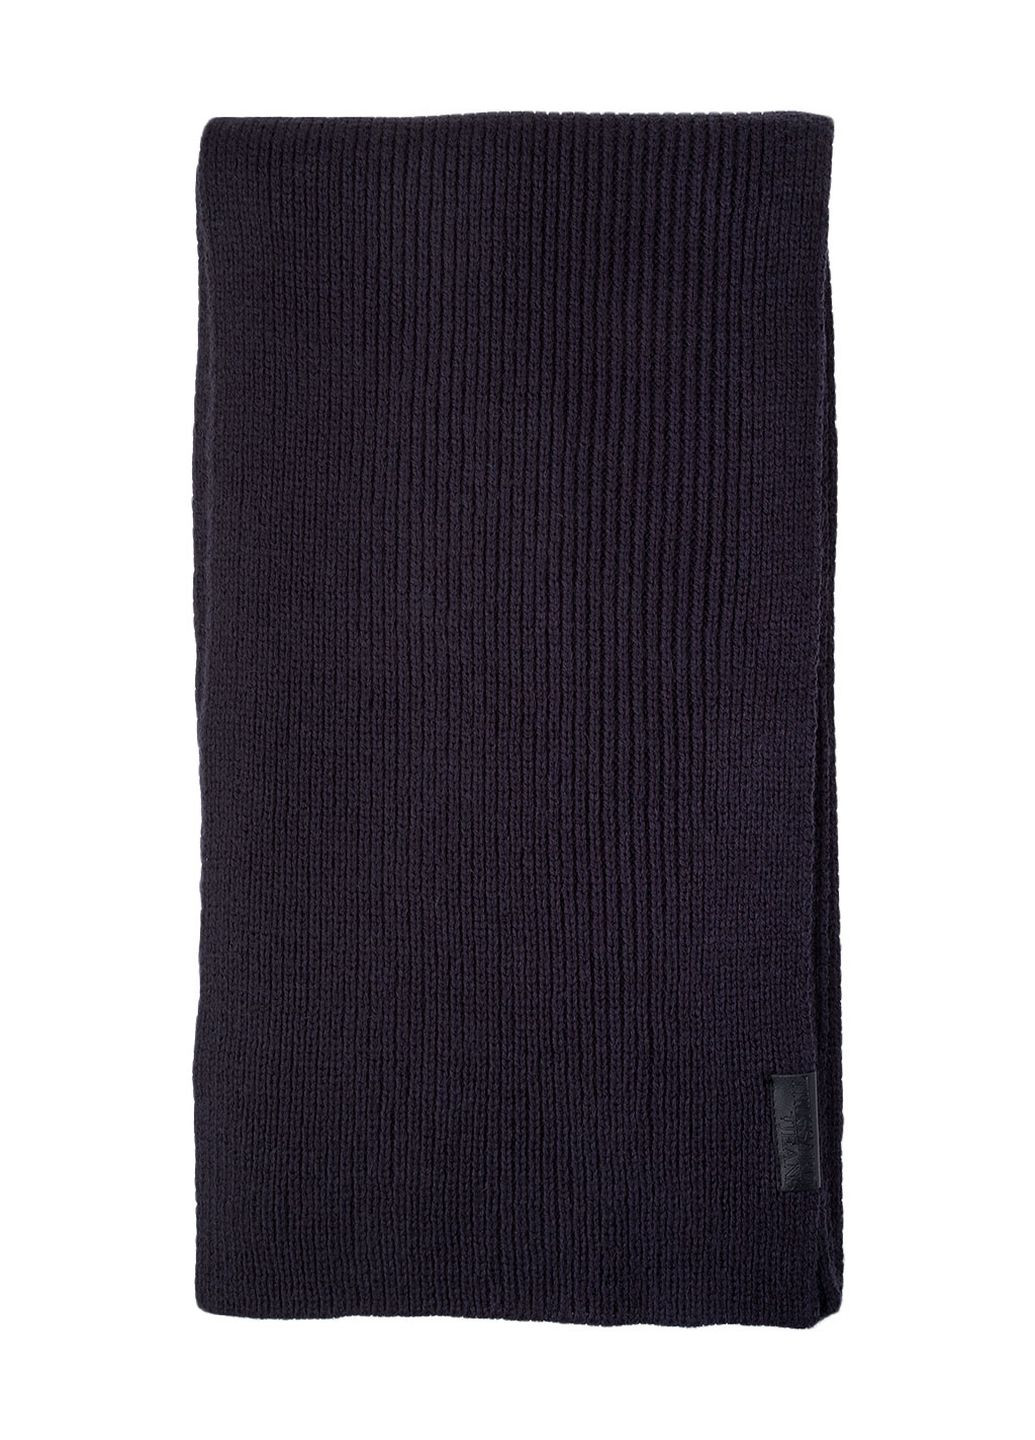 Синий зимний комплект ( шапка/шарф/рукавички ) Trussardi Jeans